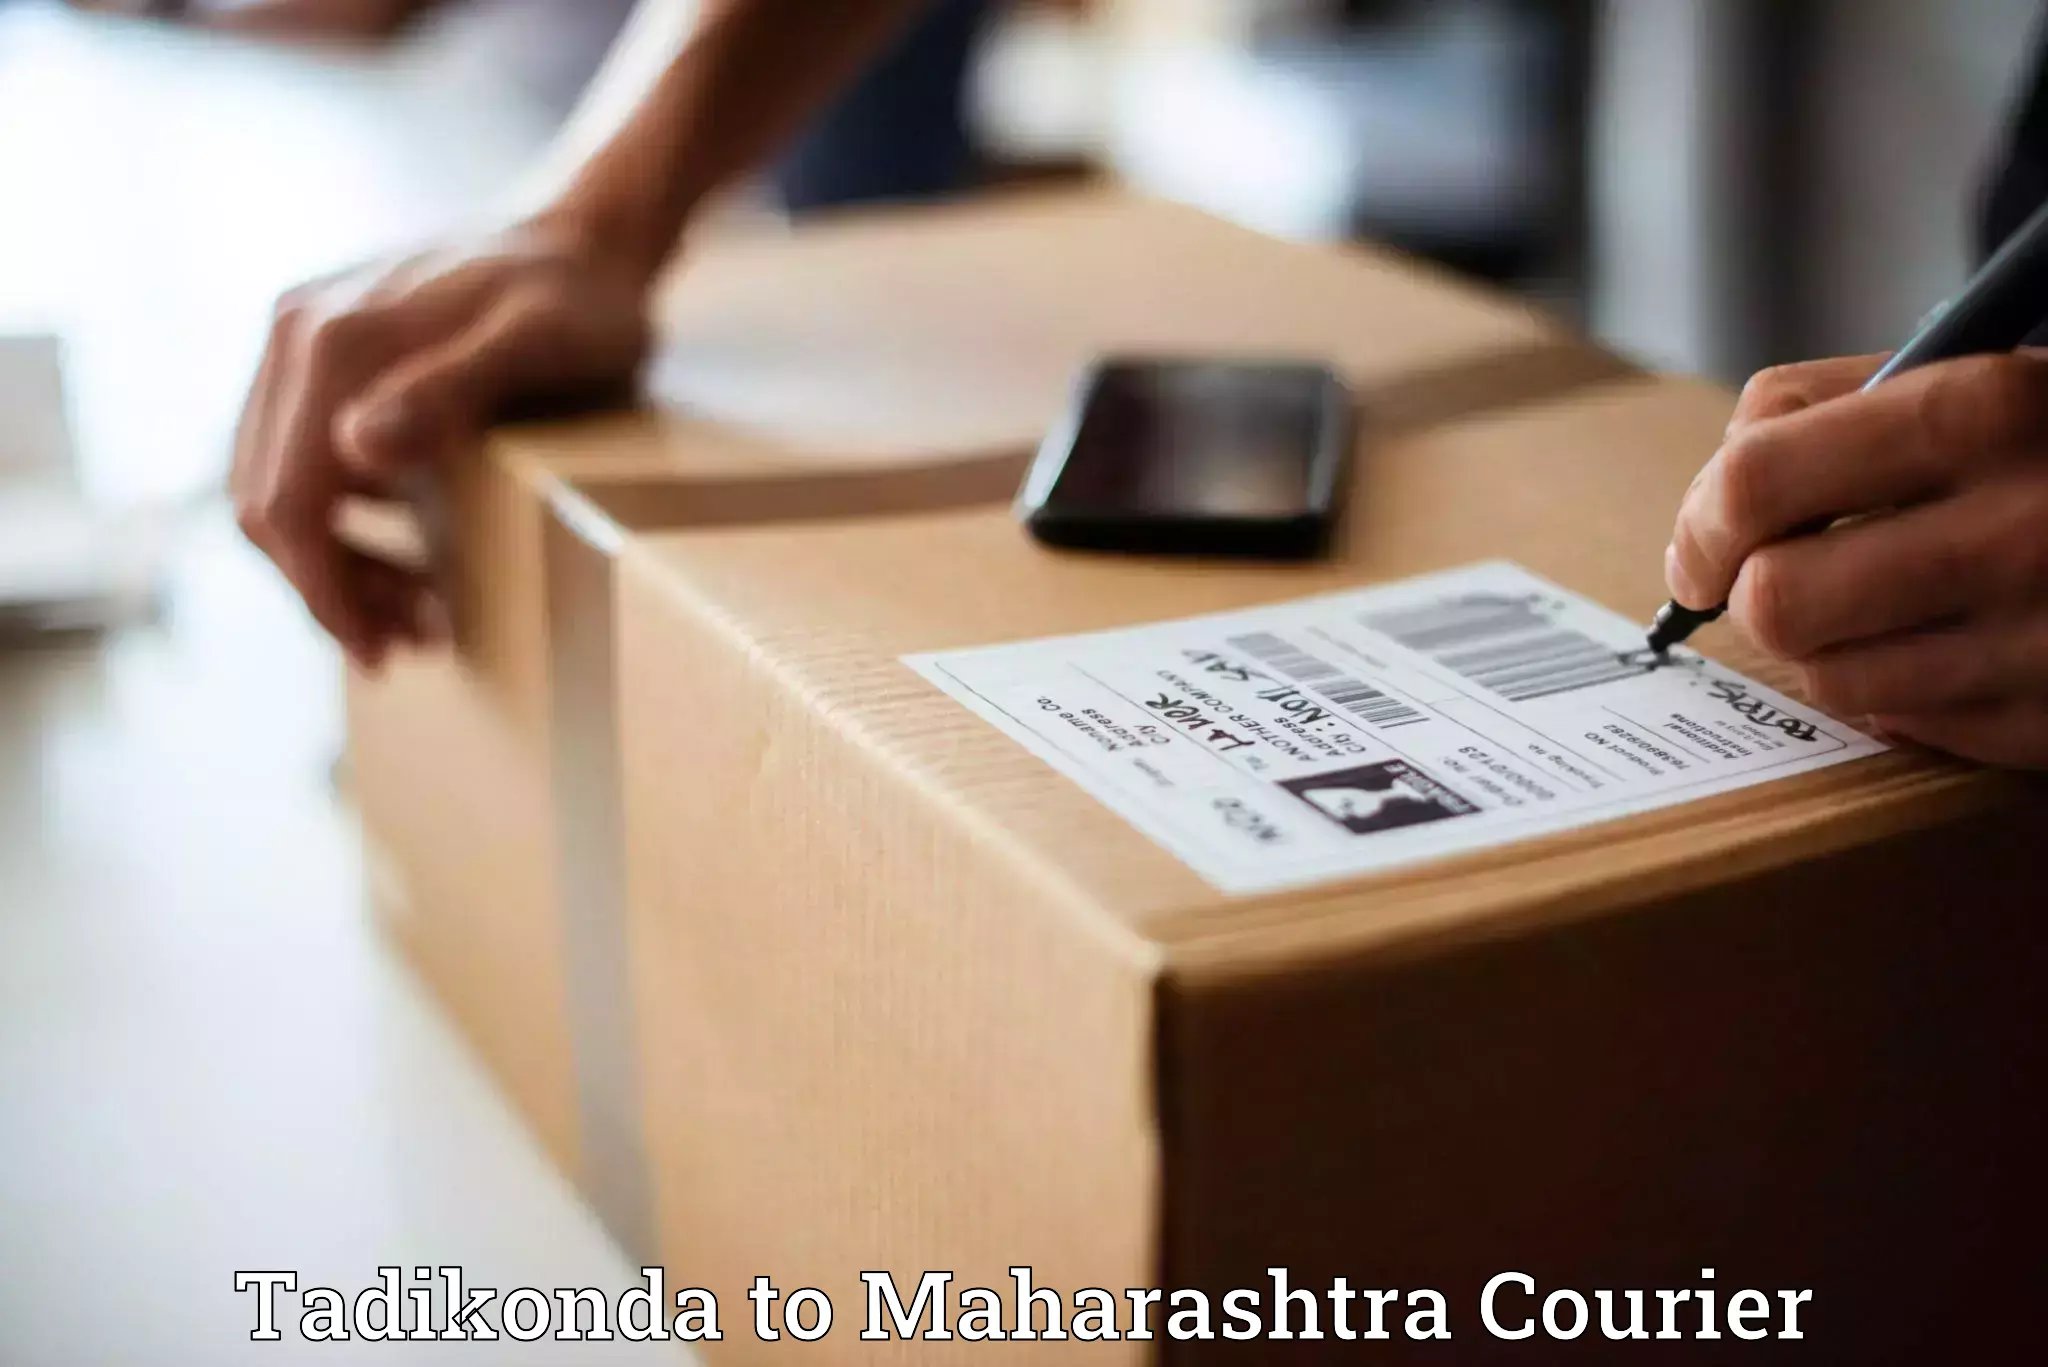 Cargo delivery service Tadikonda to Khandala Pune